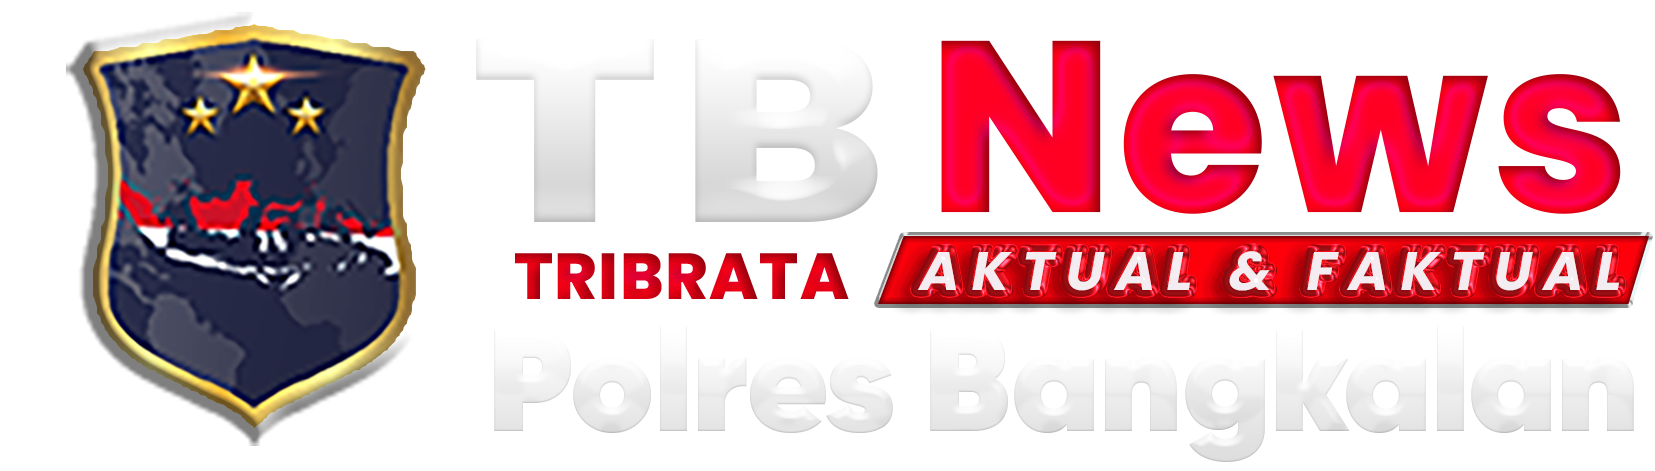 Tribratanews Polres Bangkalan